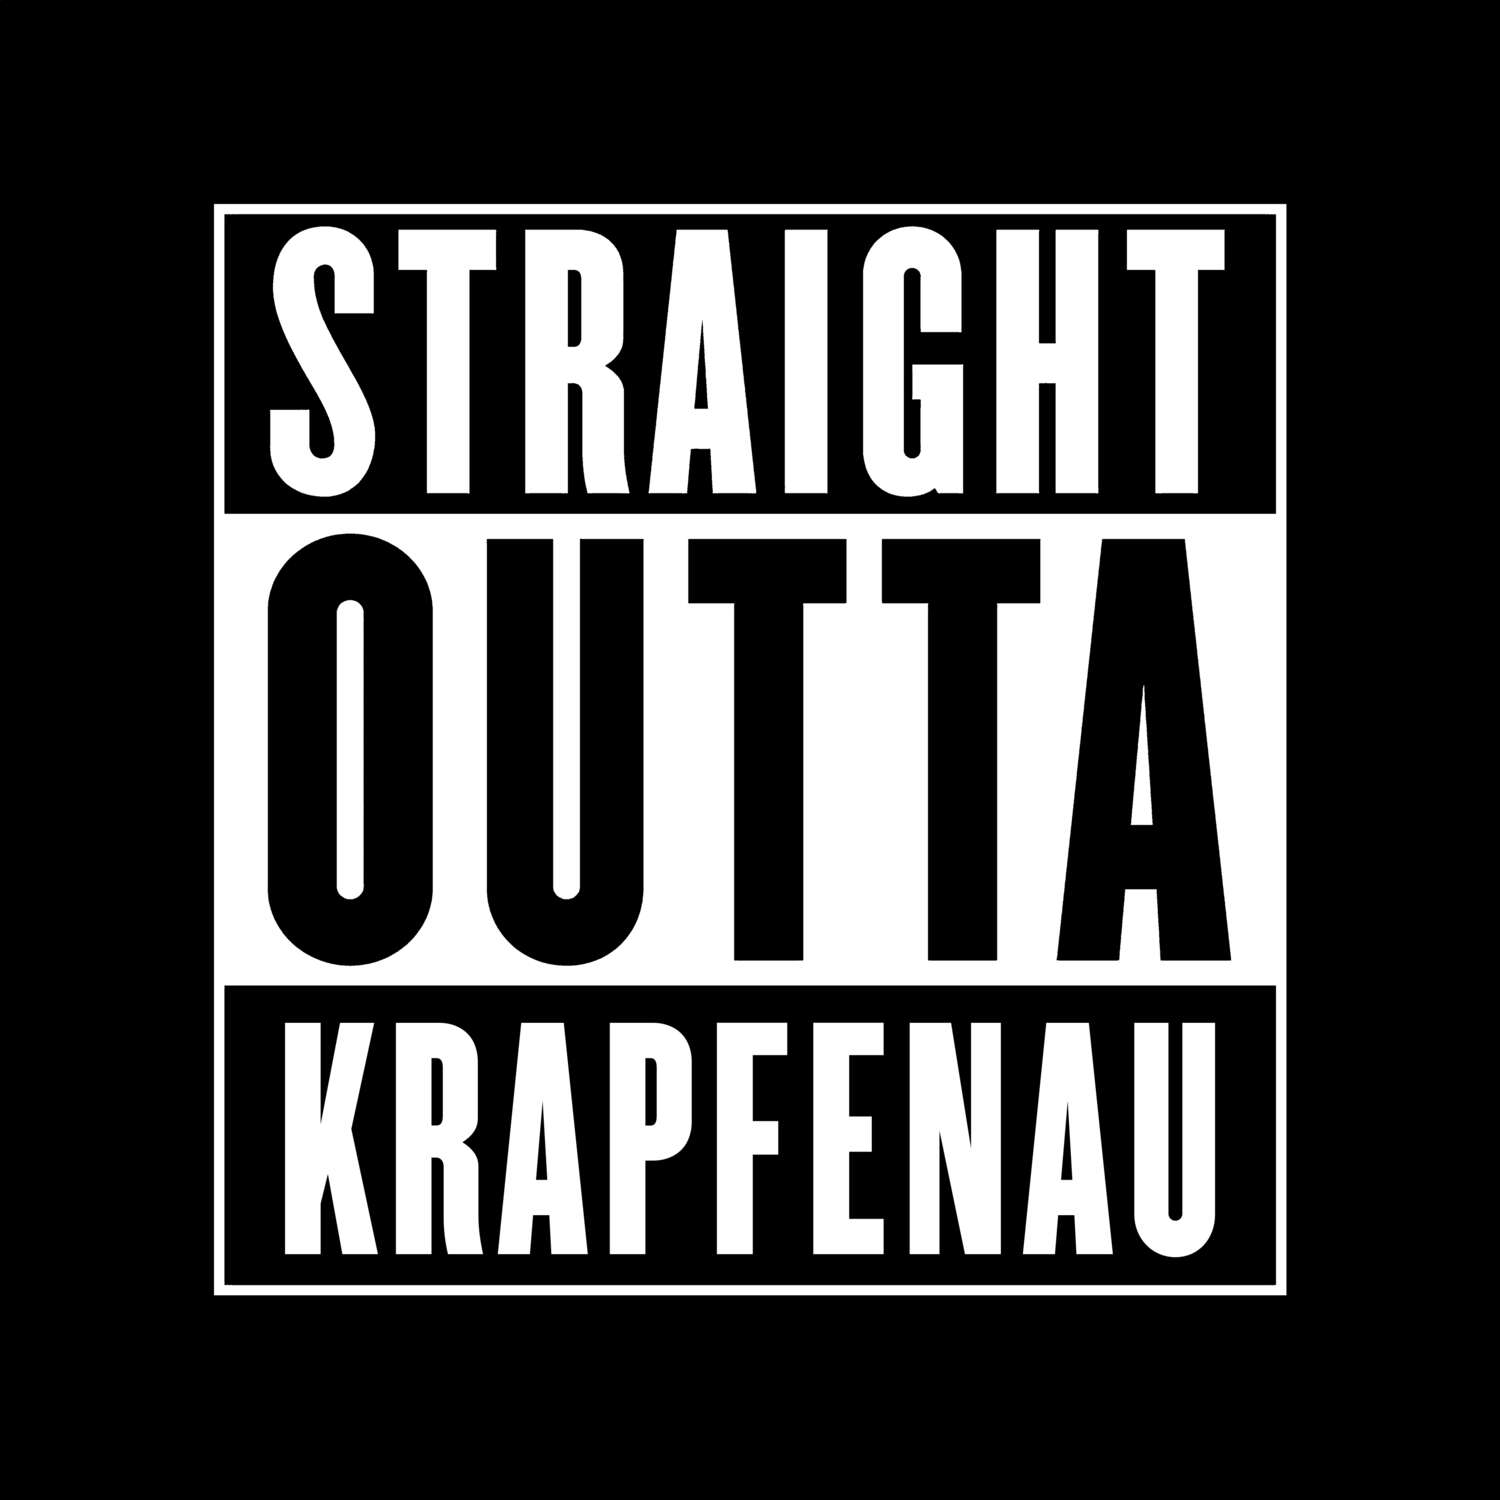 Krapfenau T-Shirt »Straight Outta«